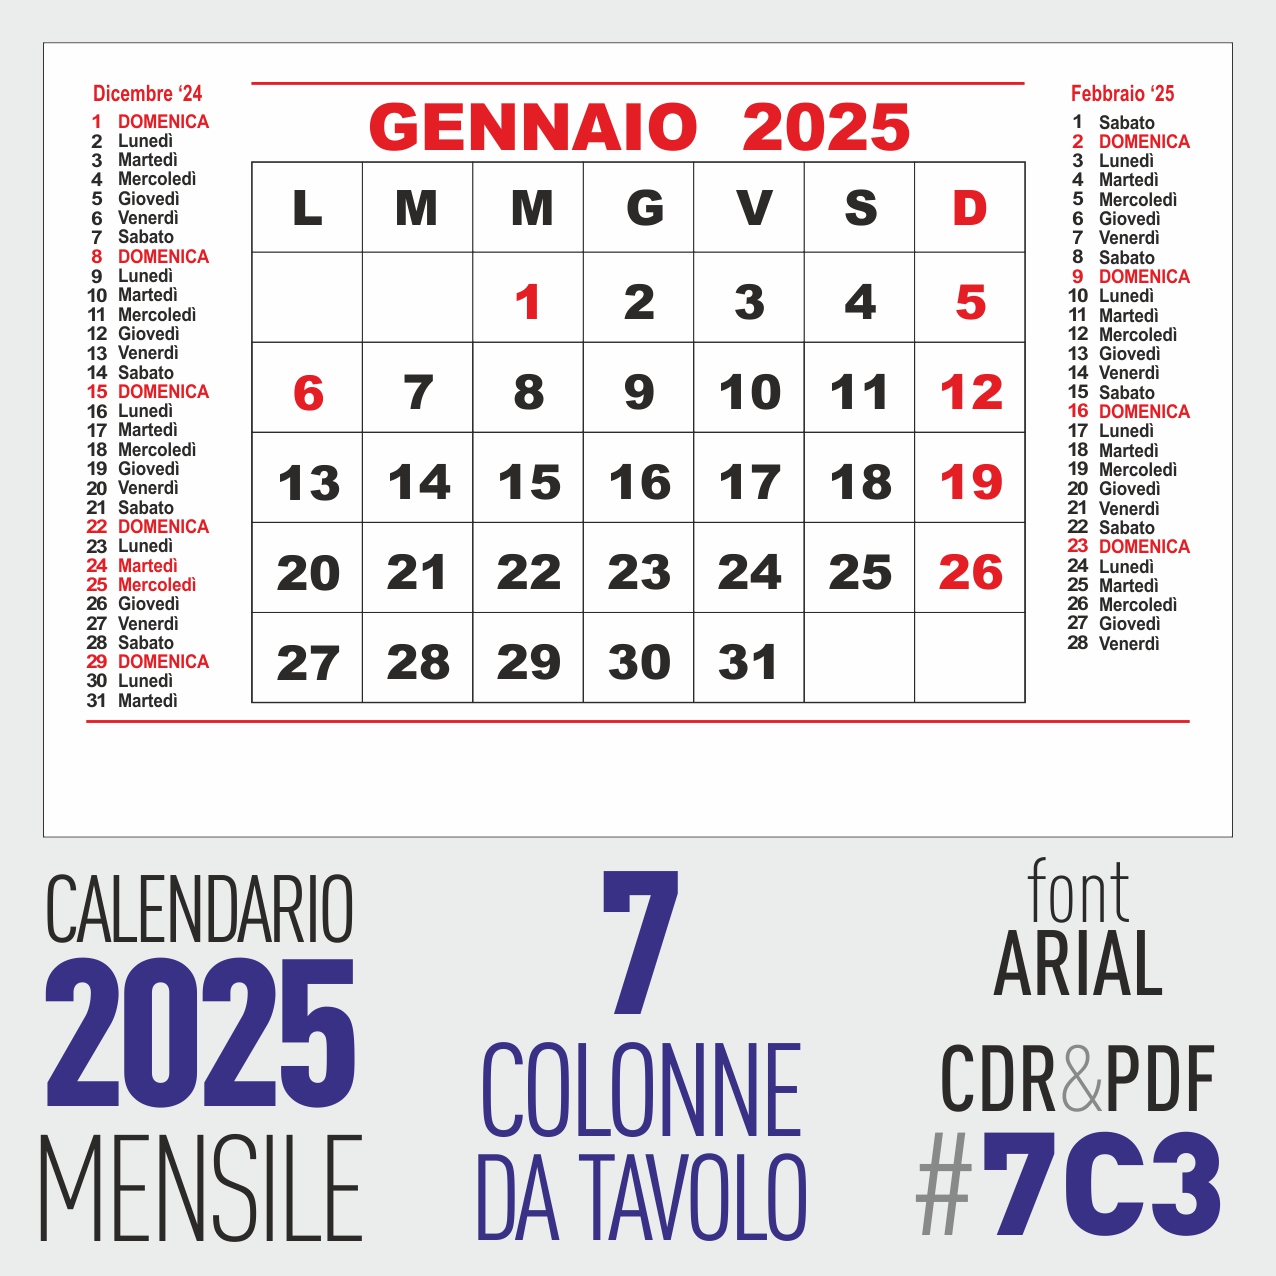 CALENDARIO 2025 MENSILE